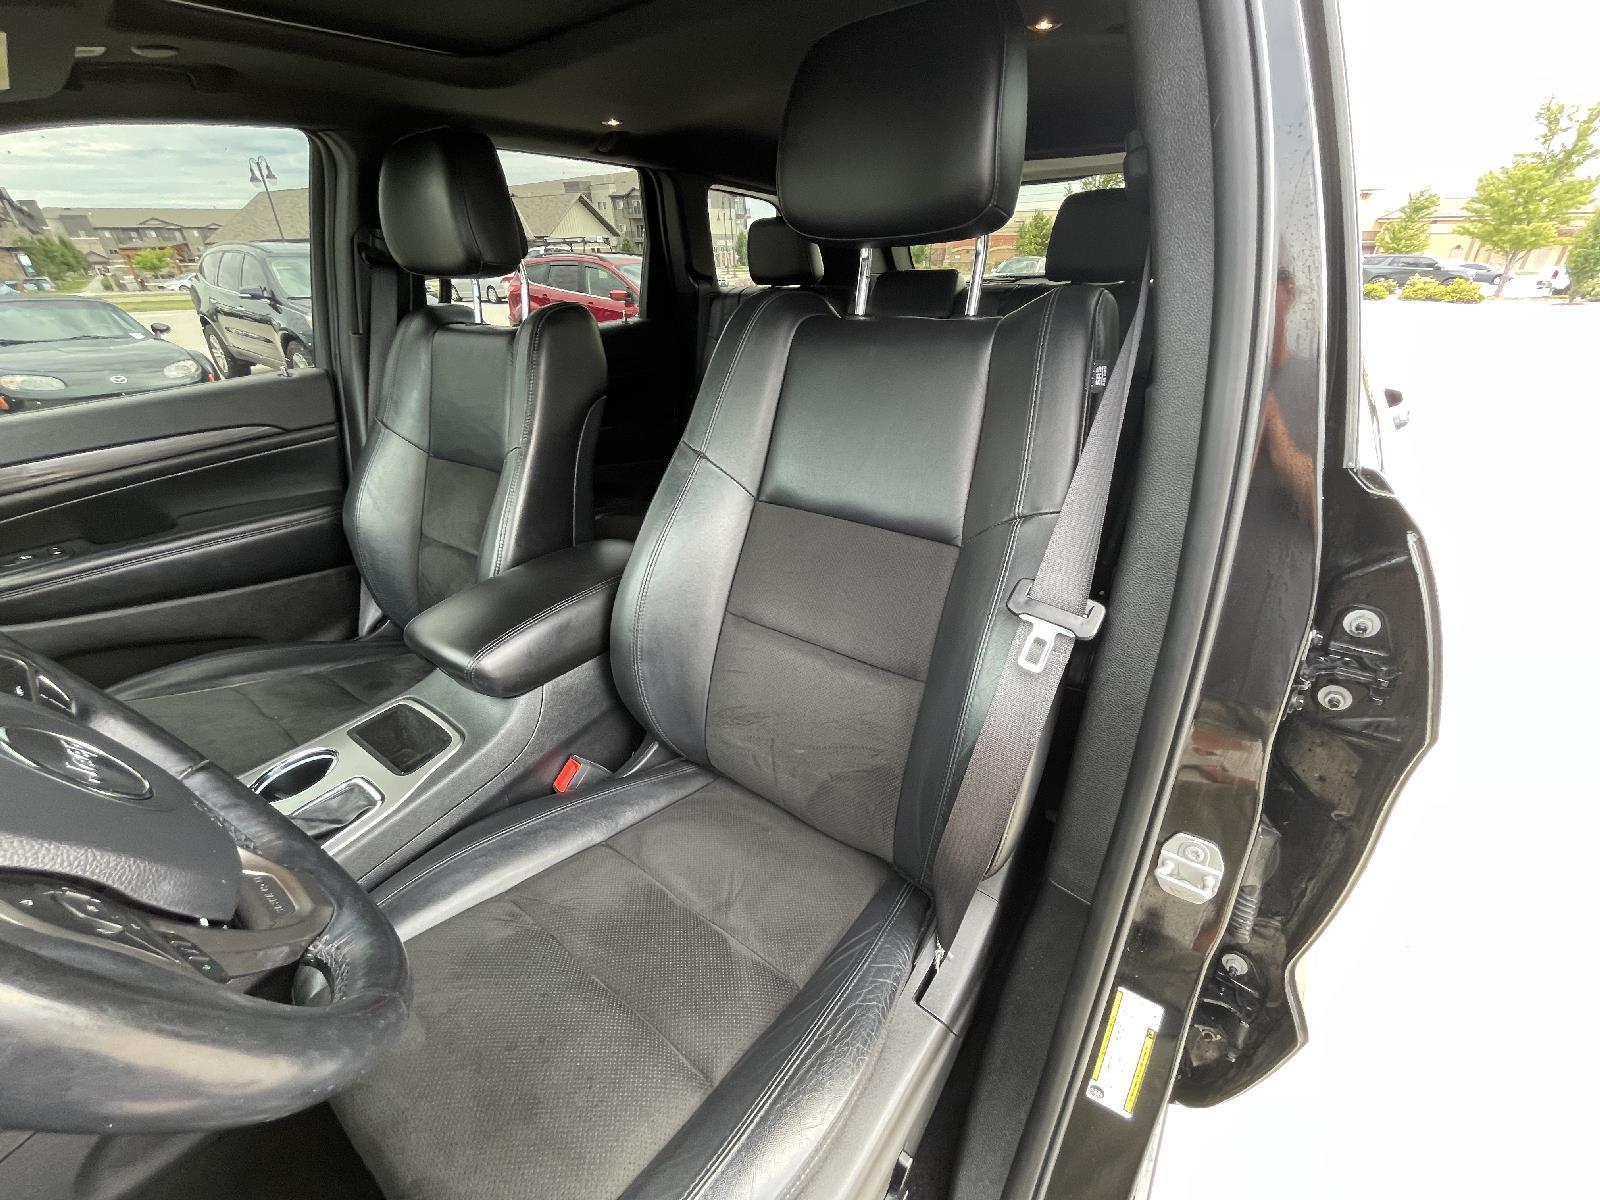 Used 2020 Jeep Grand Cherokee Altitude SUV for sale in Lincoln NE